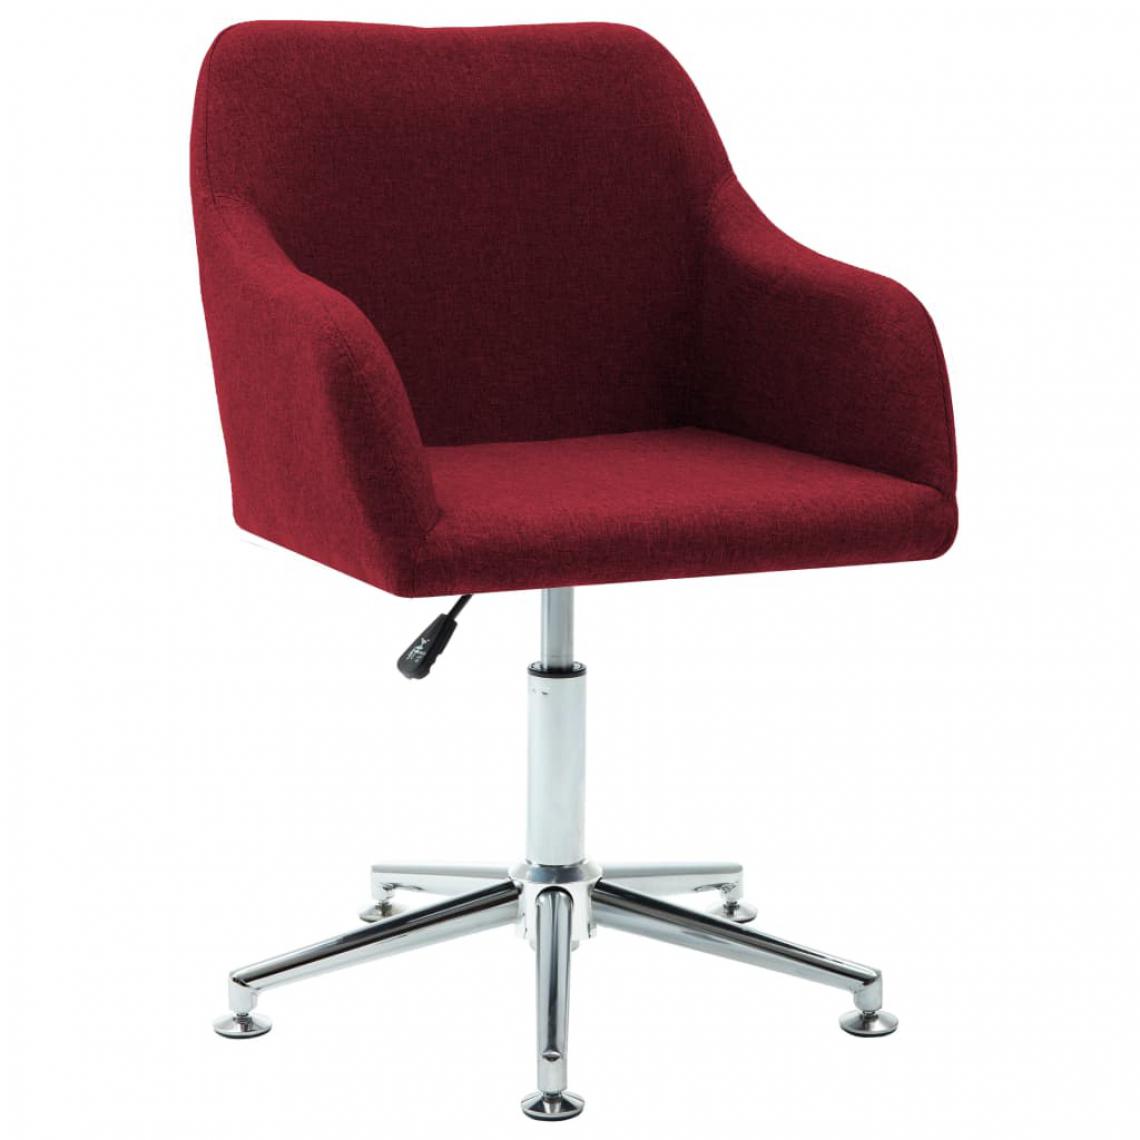 Chunhelife - Chaise pivotante de bureau Rouge bordeaux Tissu - Chaises